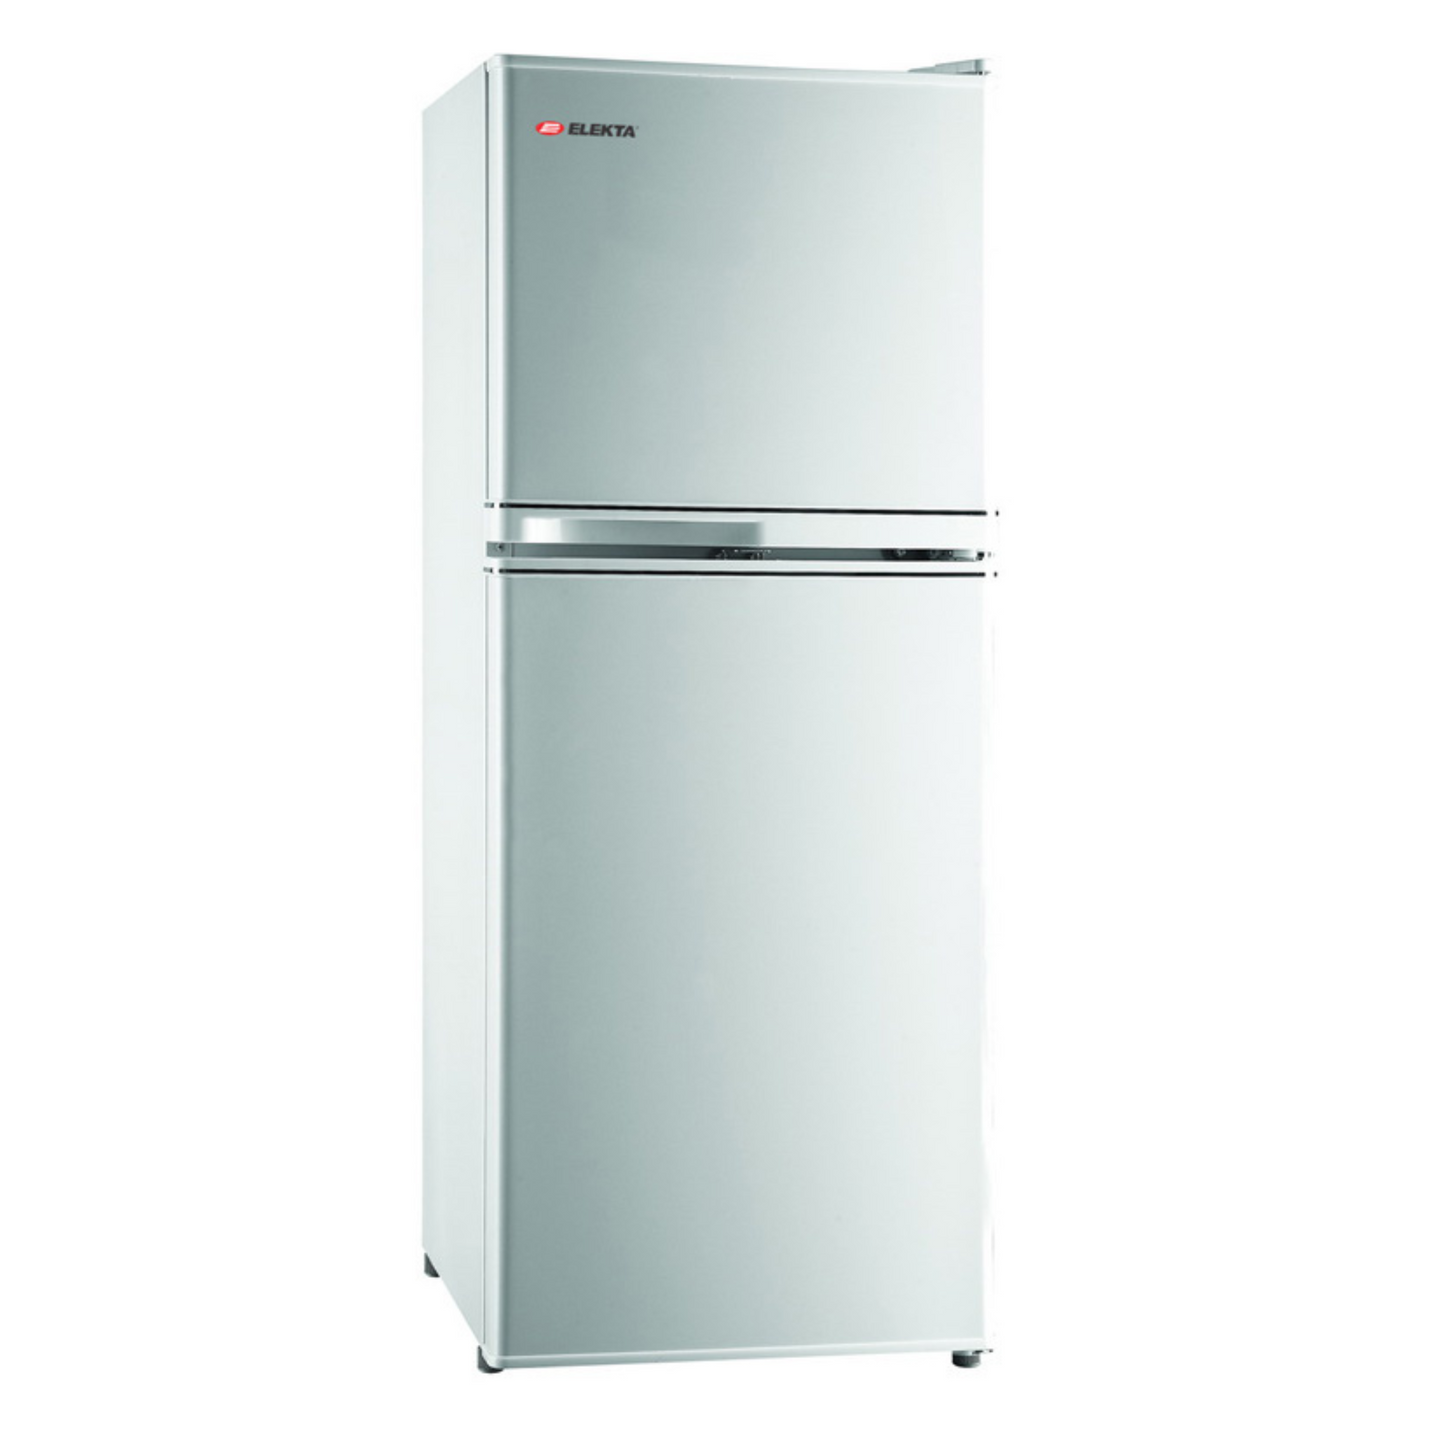 Elekta 138L Refrigerator, EFR-175SMKIII